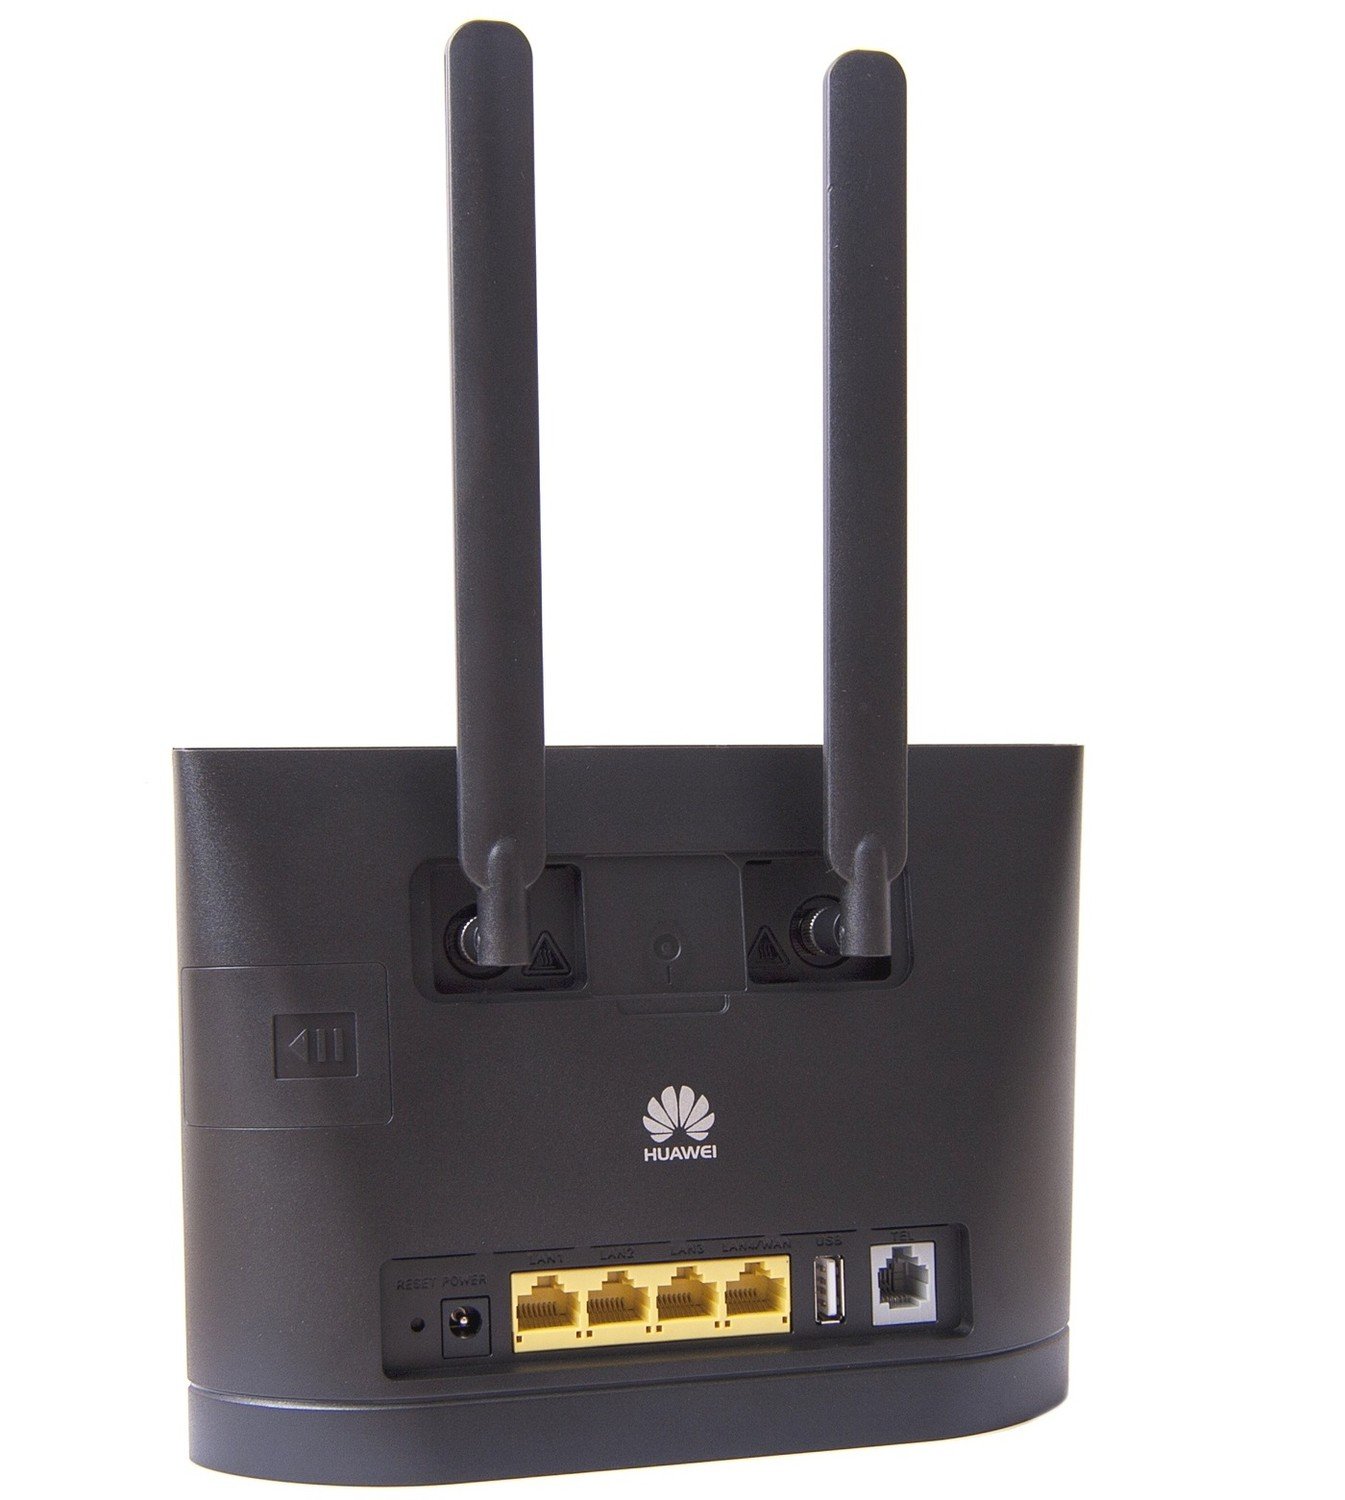 Antena pro Router Huawei B593 B525 B315